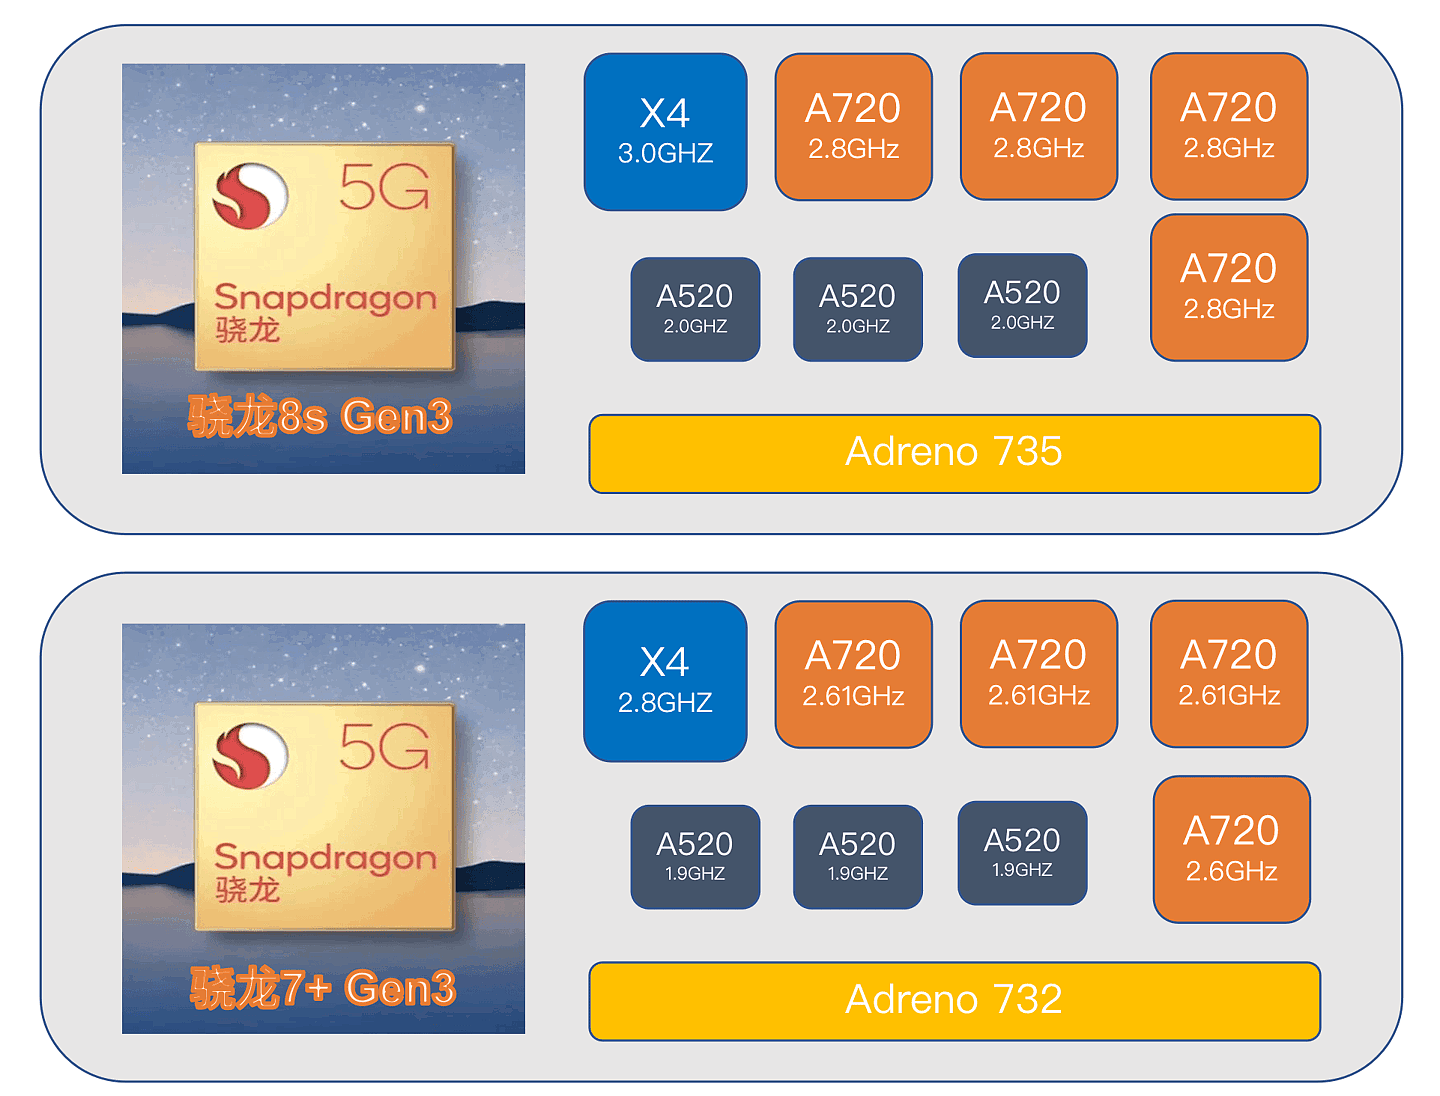 高通骁龙 8s Gen3 芯片尺寸 8.40 x 10.66mm，小于骁龙 8 Gen3 - 4